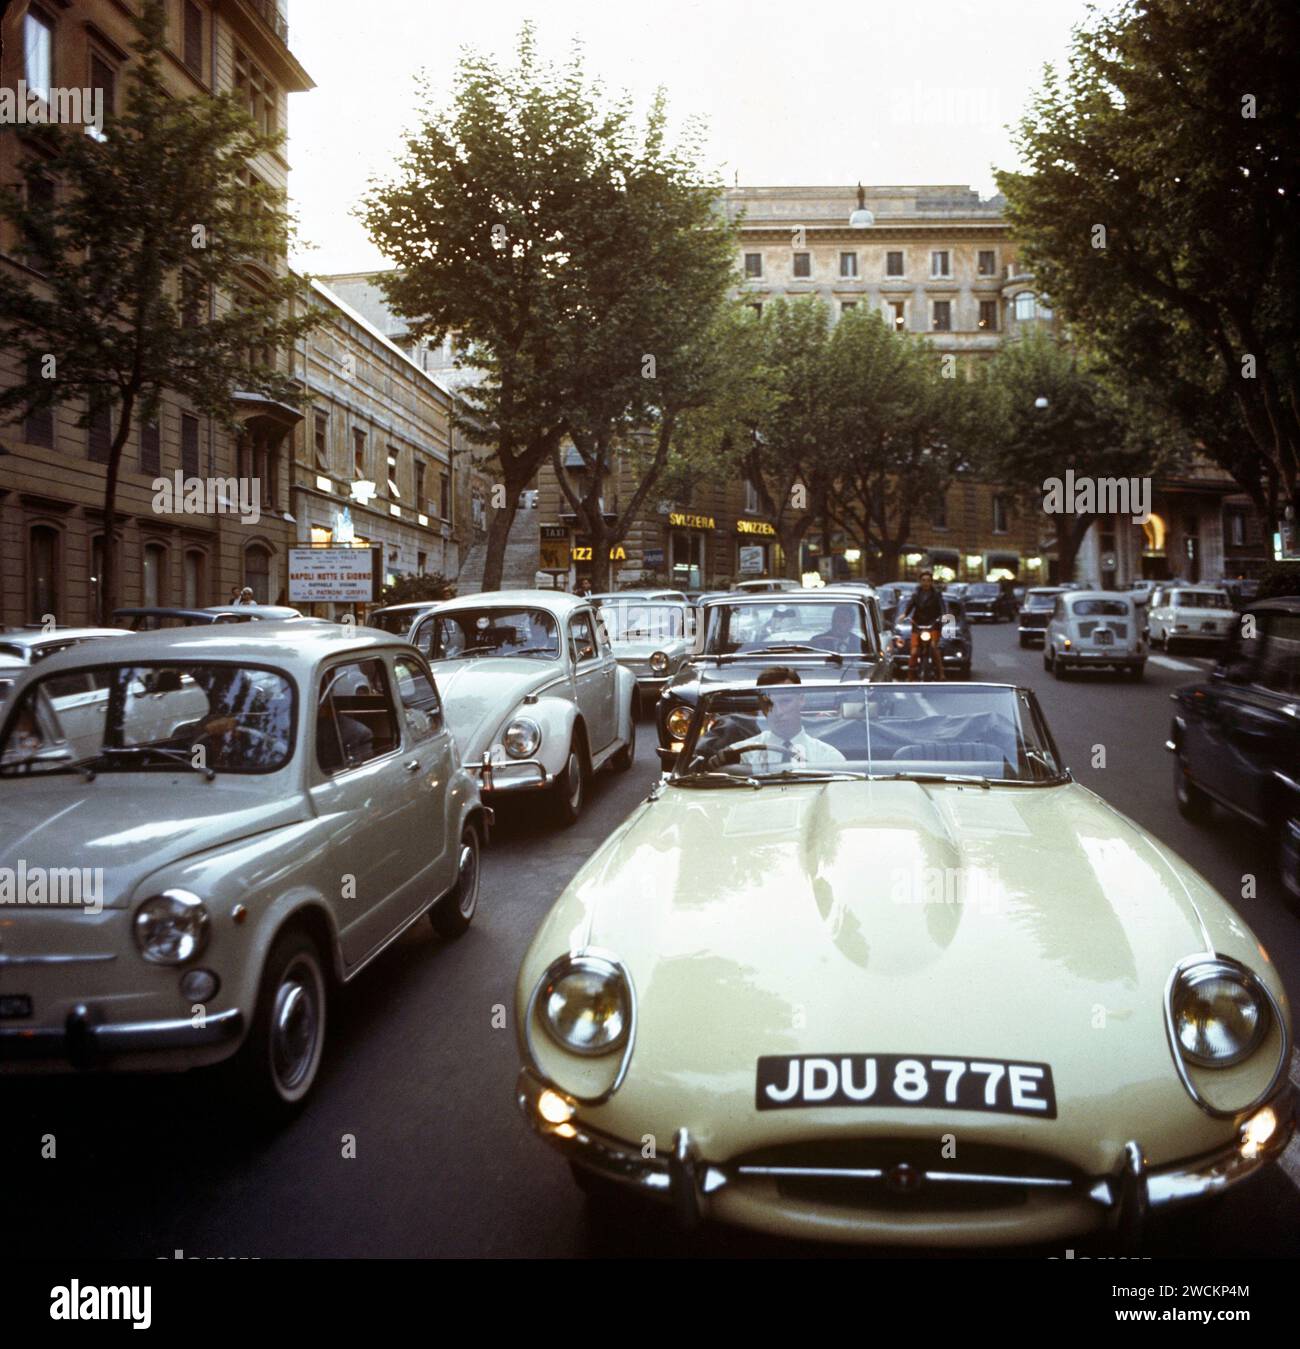 Jaguar e-TYPE 1967, JDU877E, nel "West End" di Roma, durante l'ora di punta, circondato dal traffico e dai frequentatori del teatro per vedere Napoli notte e giorno. Foto Stock